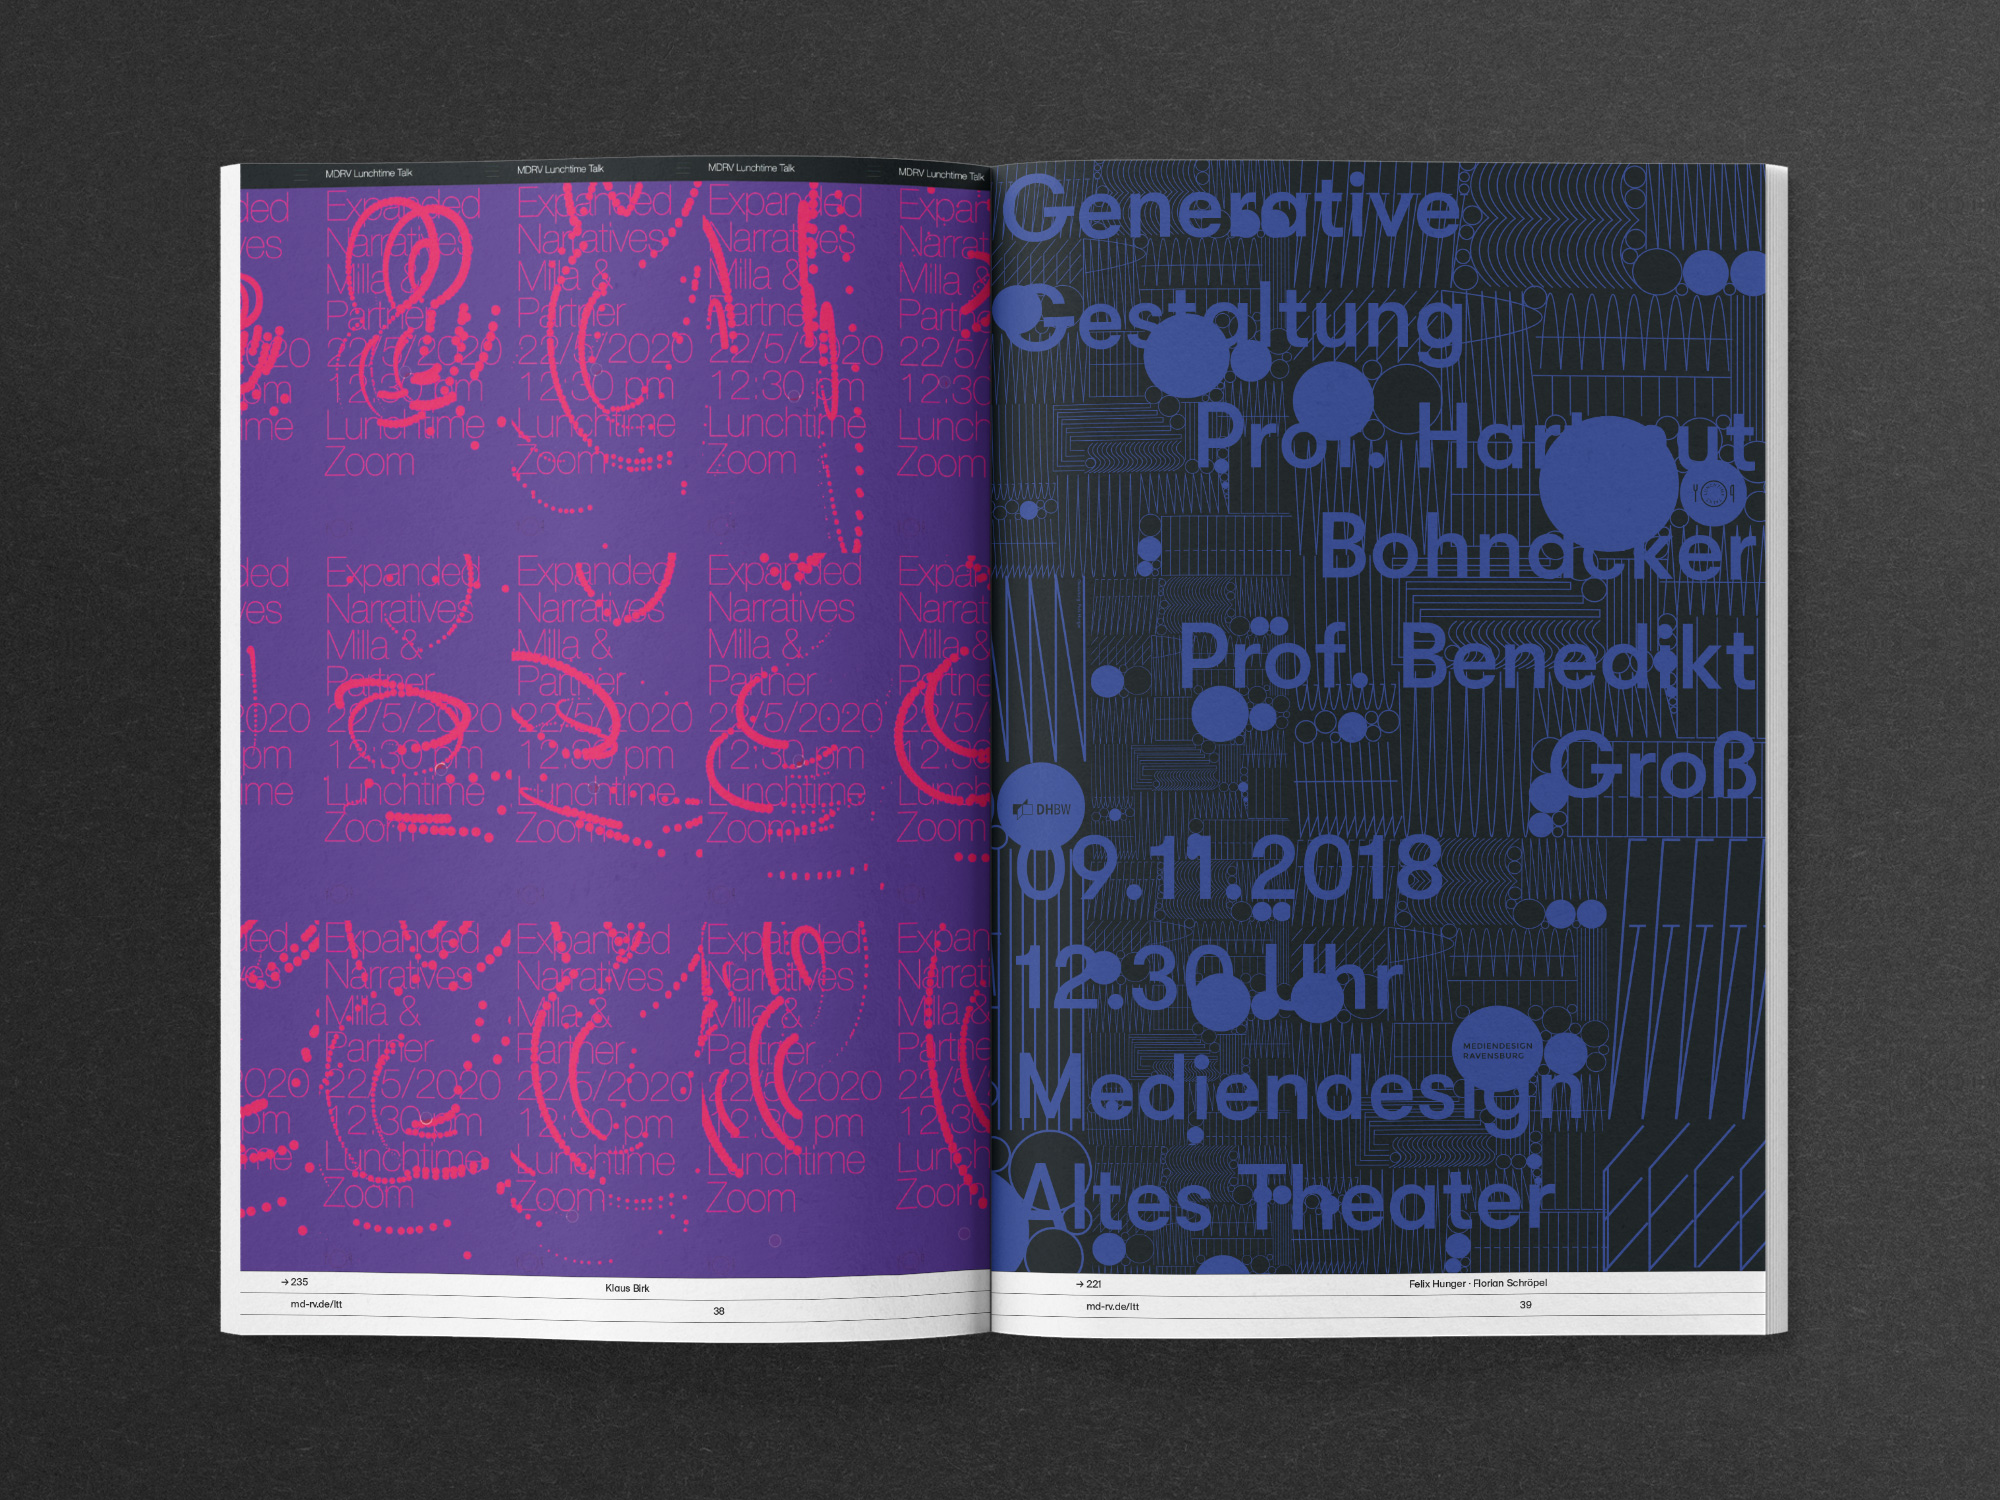 Klaus Birk, DHBW Ravensburg: Design Shifts 5